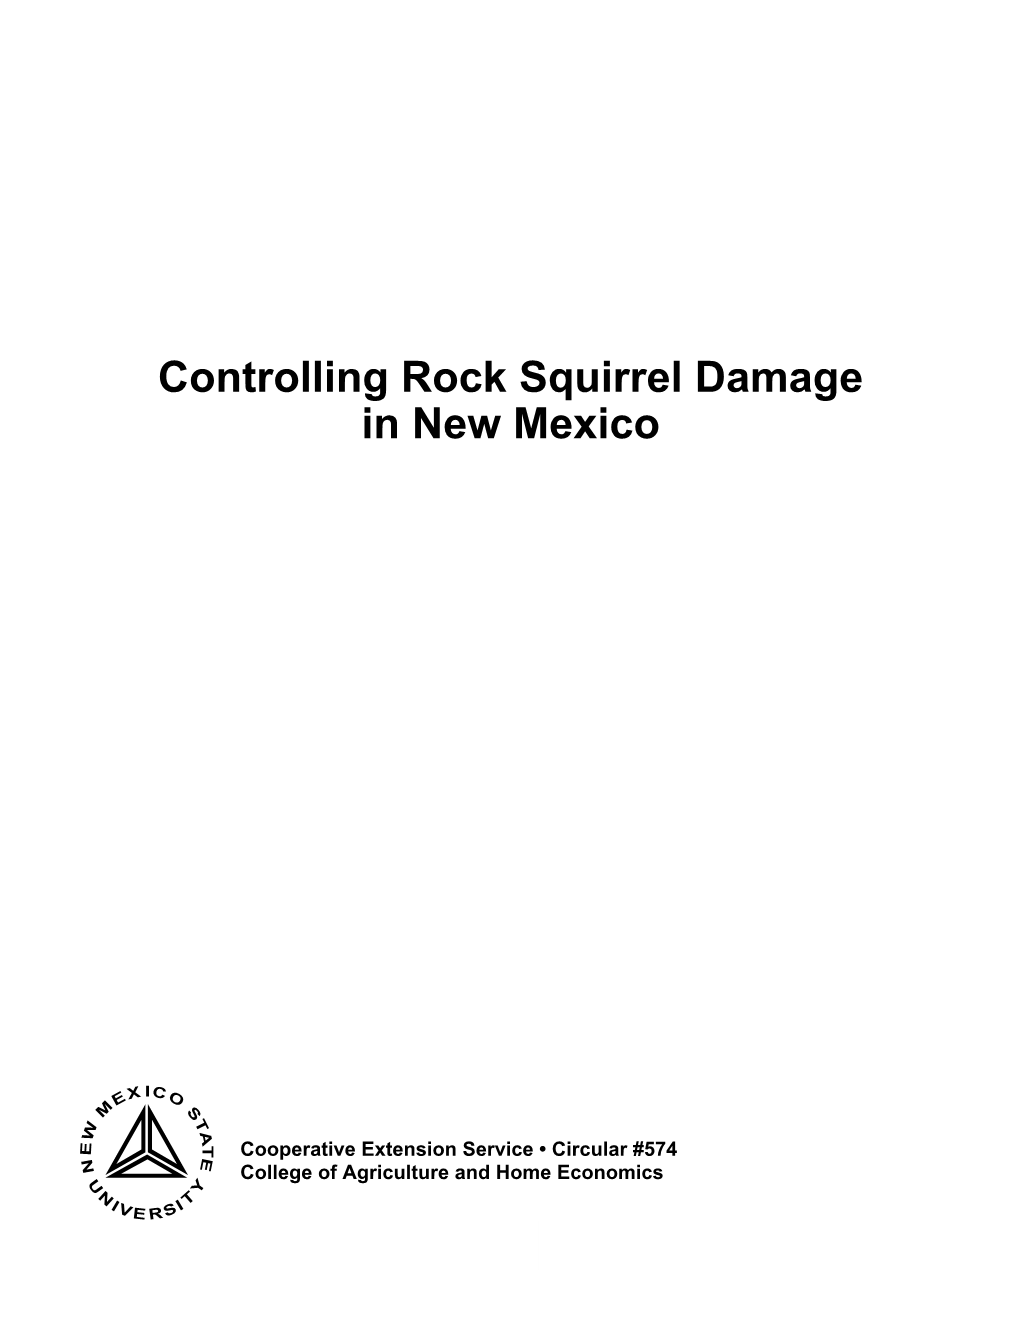 Rock Squirrel Damage in New Mexico